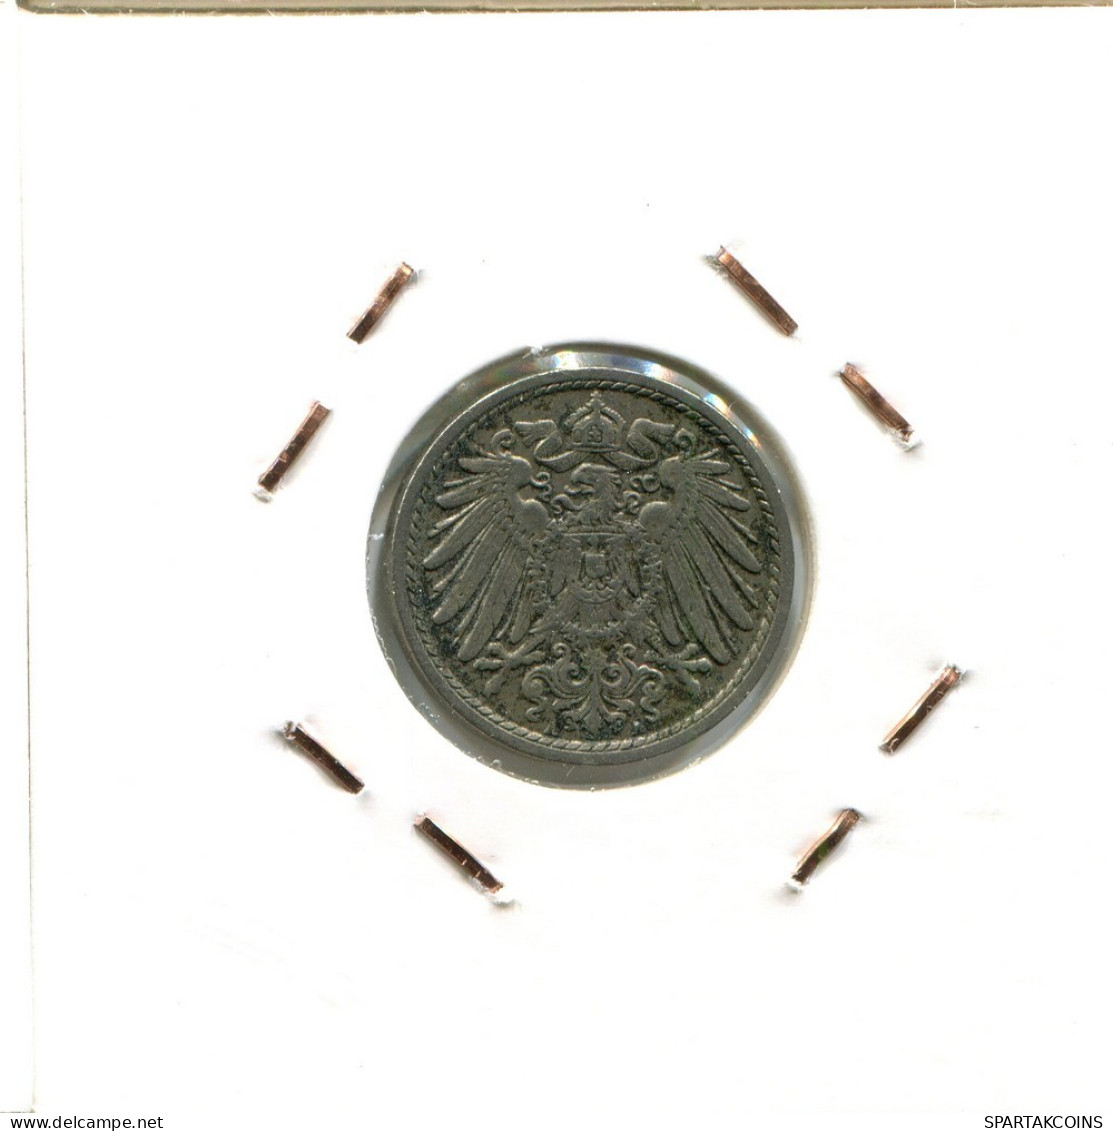 5 PFENNIG 1913 A GERMANY Coin #DB856.U.A - 5 Pfennig